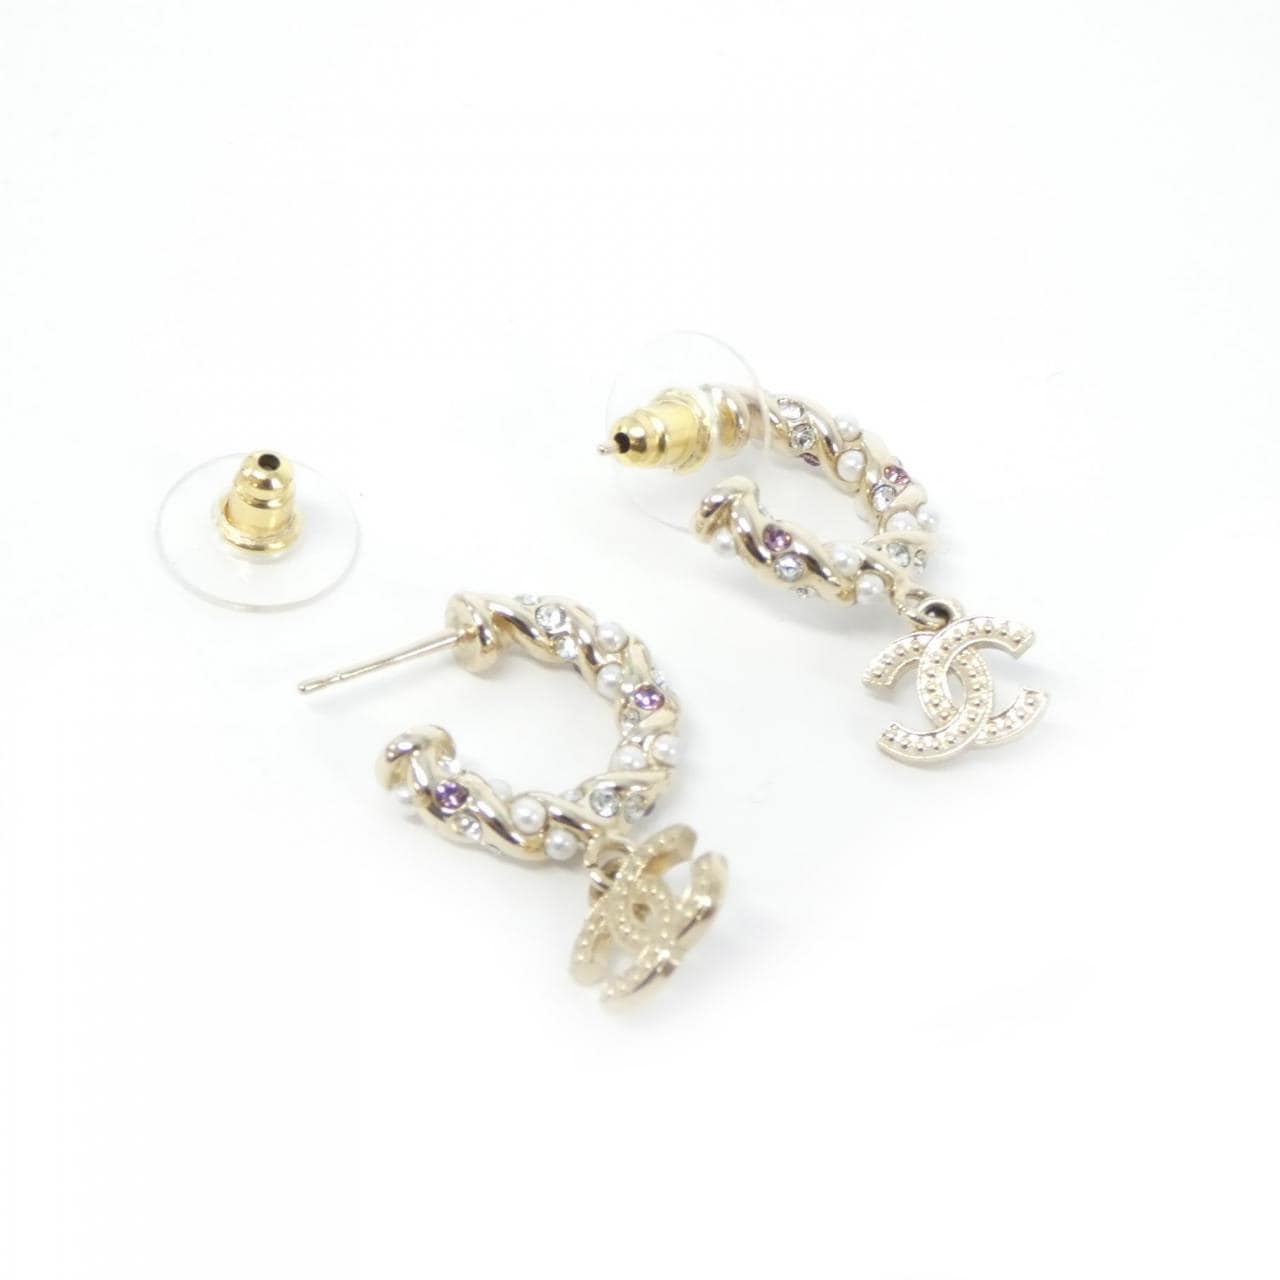 CHANEL ABB507 earrings